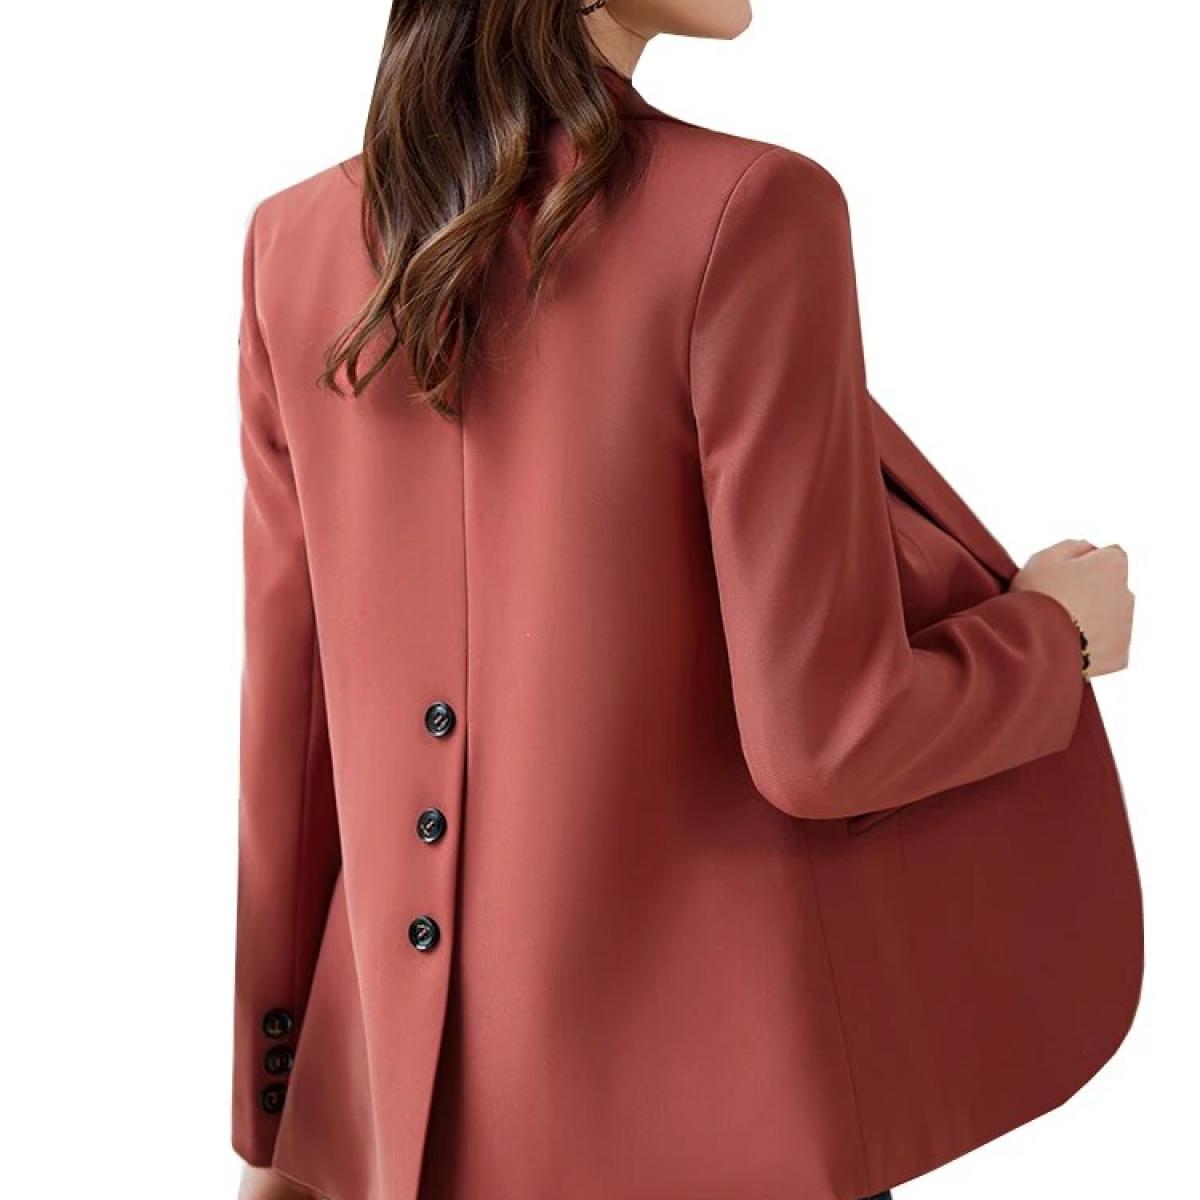 Coffee Beige Red Office Ladies Blazer Jacket Women Long Sleeve Female Business Work Wear Slim Formal Coat For Autumn Win